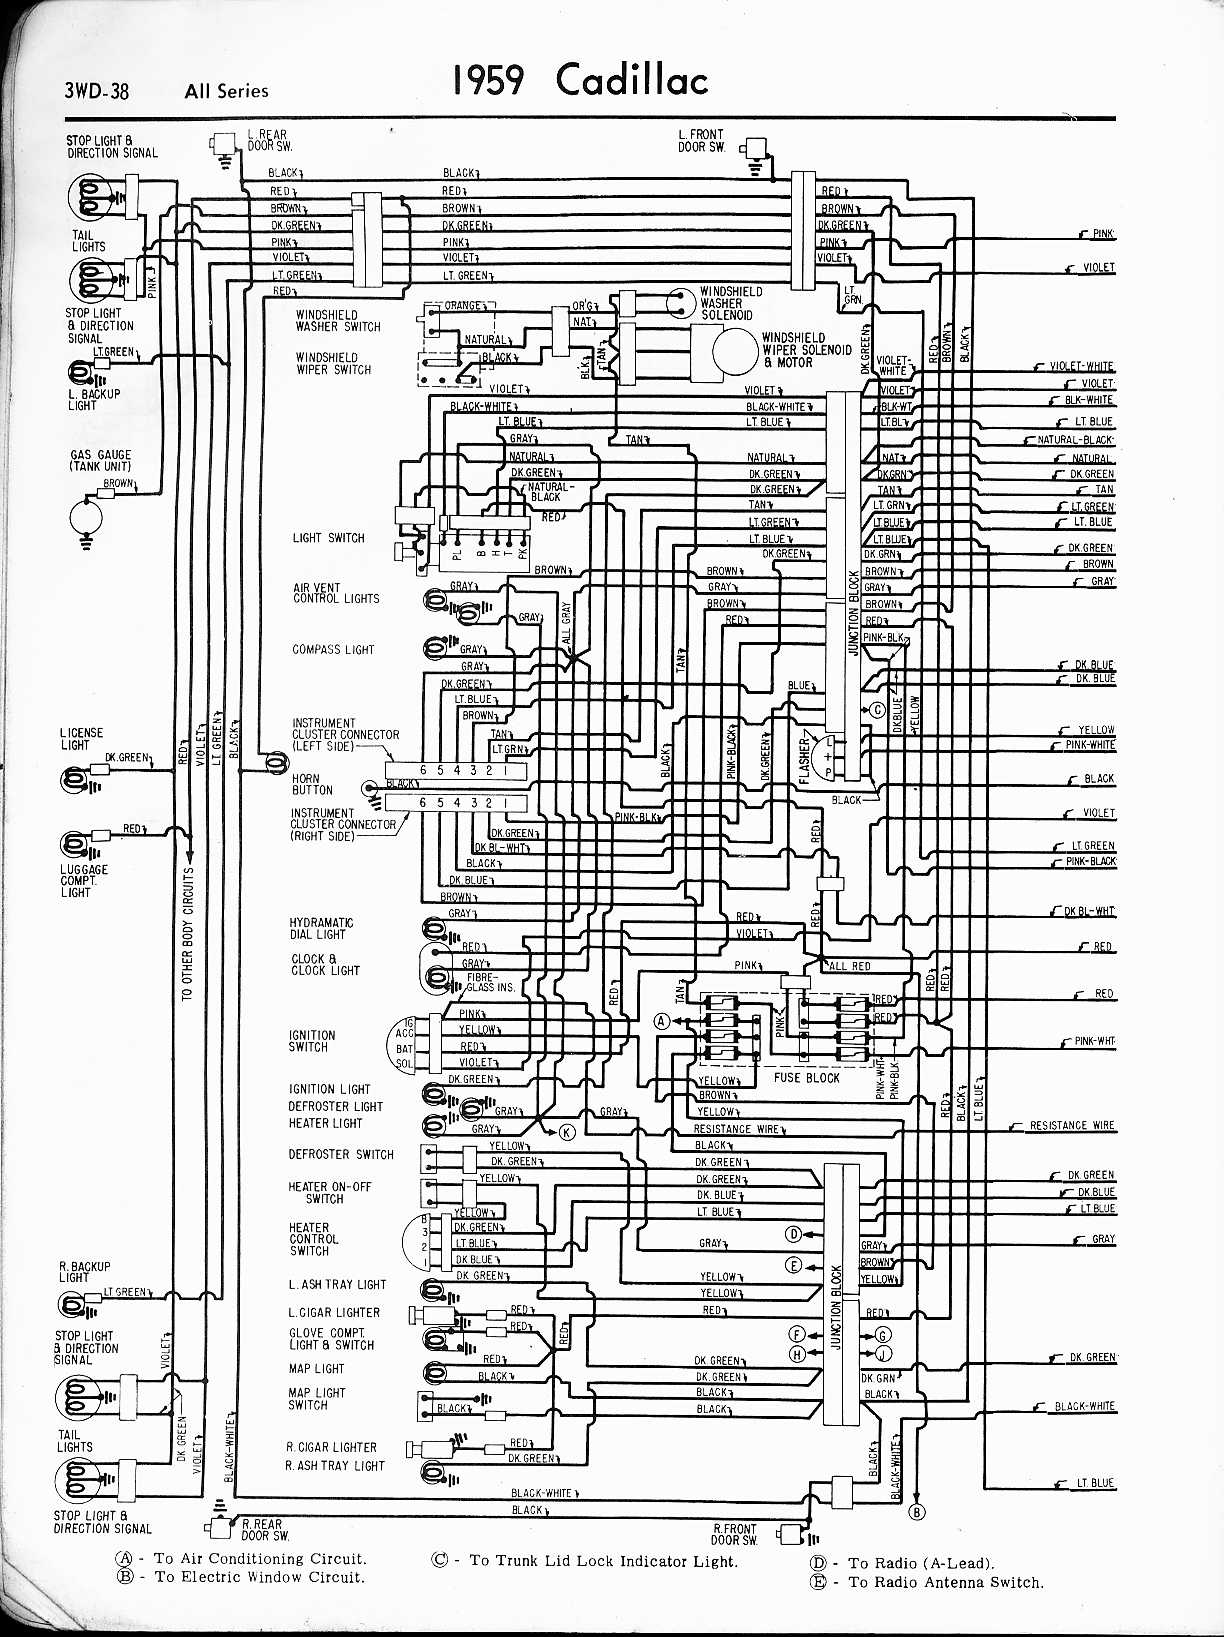 1959 Cadillac gas / fuel tank sending unit cadillac xlr wiring diagram 